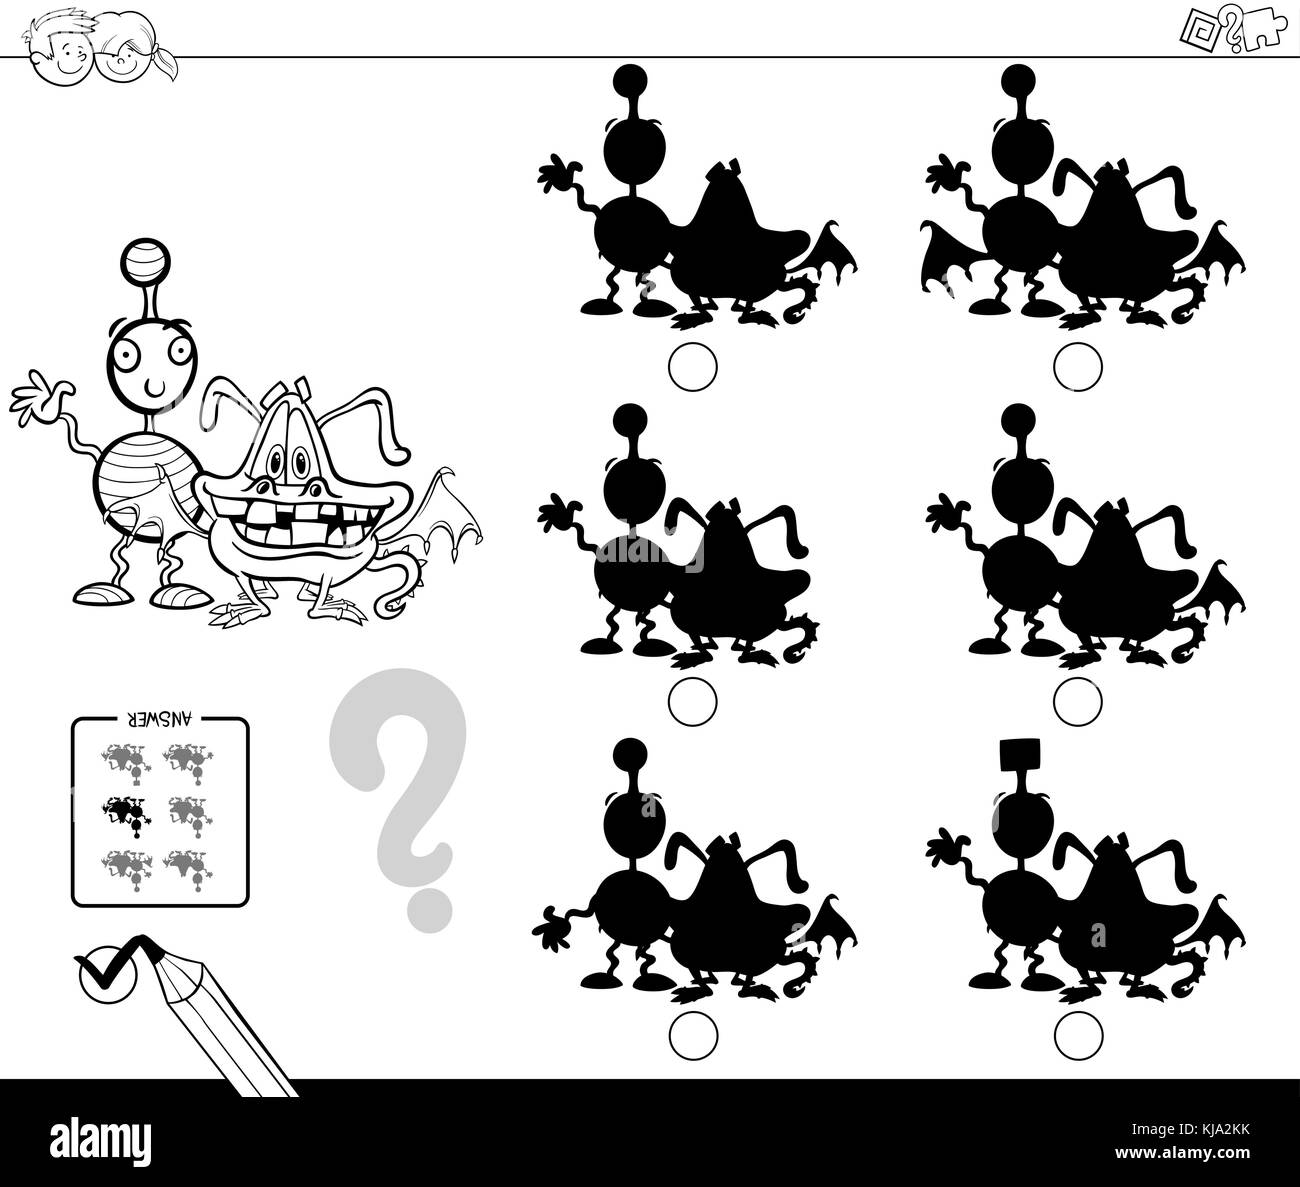 Cartoon noir et blanc illustration de la recherche de l'ombre sans différences activité éducative pour les enfants avec des personnages de bande dessinée monster colorin Illustration de Vecteur